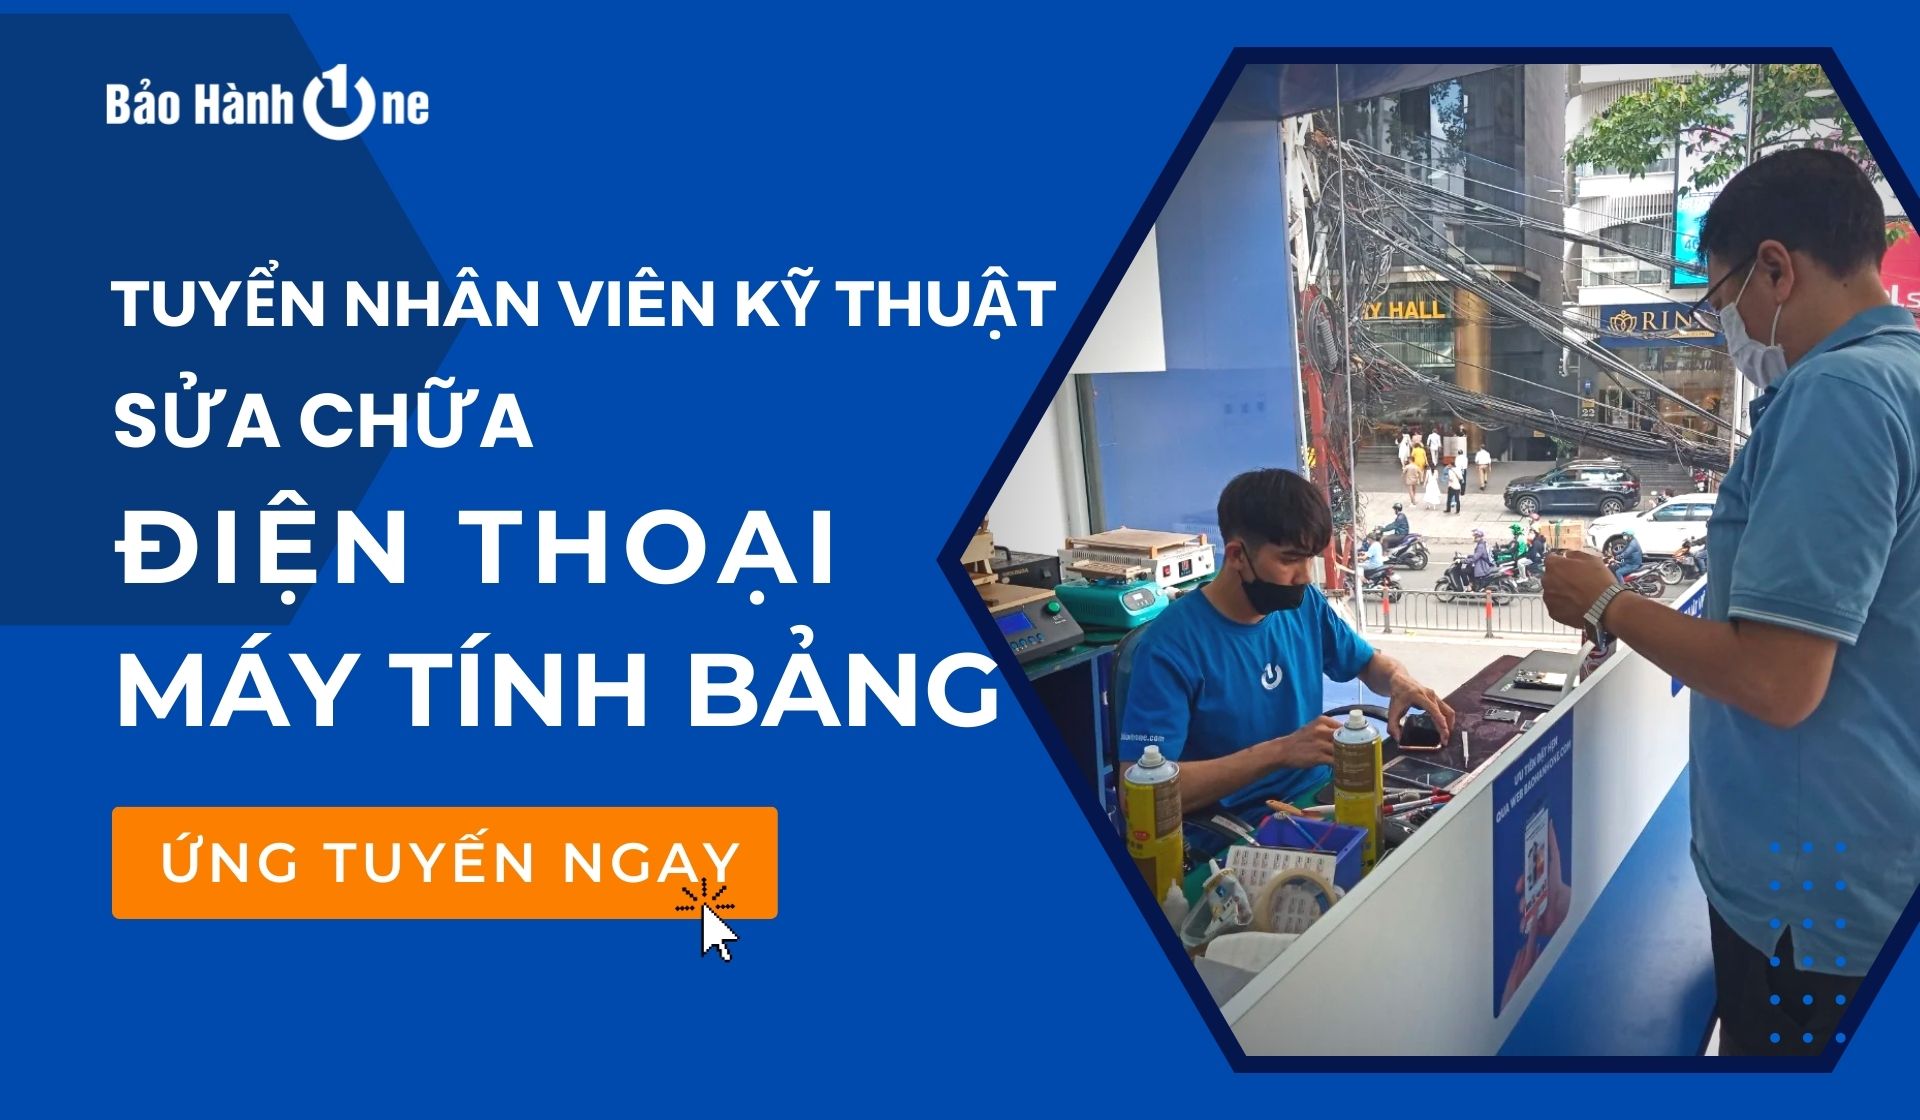 Tuyển dụng Nhân Viên Kỹ Thuật Sửa chữa Điện Thoại - Máy tính bảng tại Hồ Chí Minh